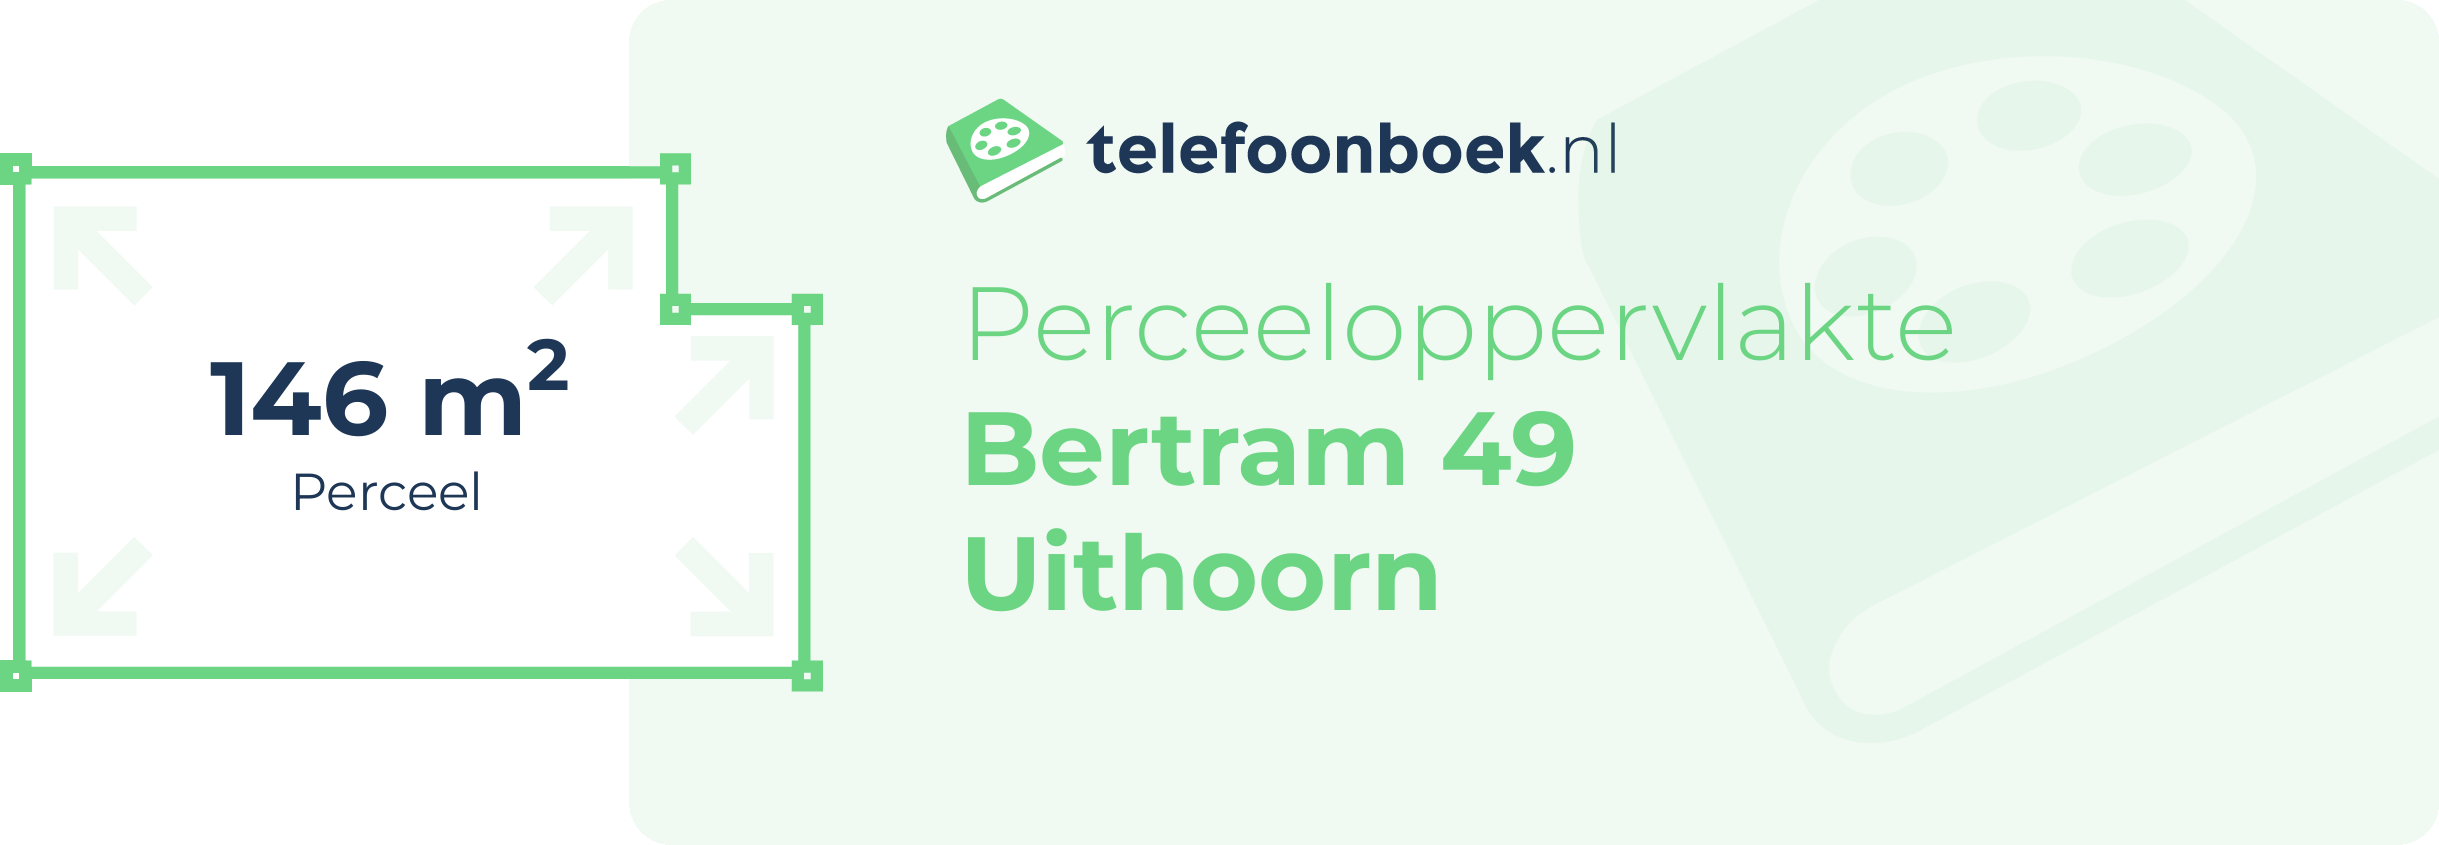 Perceeloppervlakte Bertram 49 Uithoorn